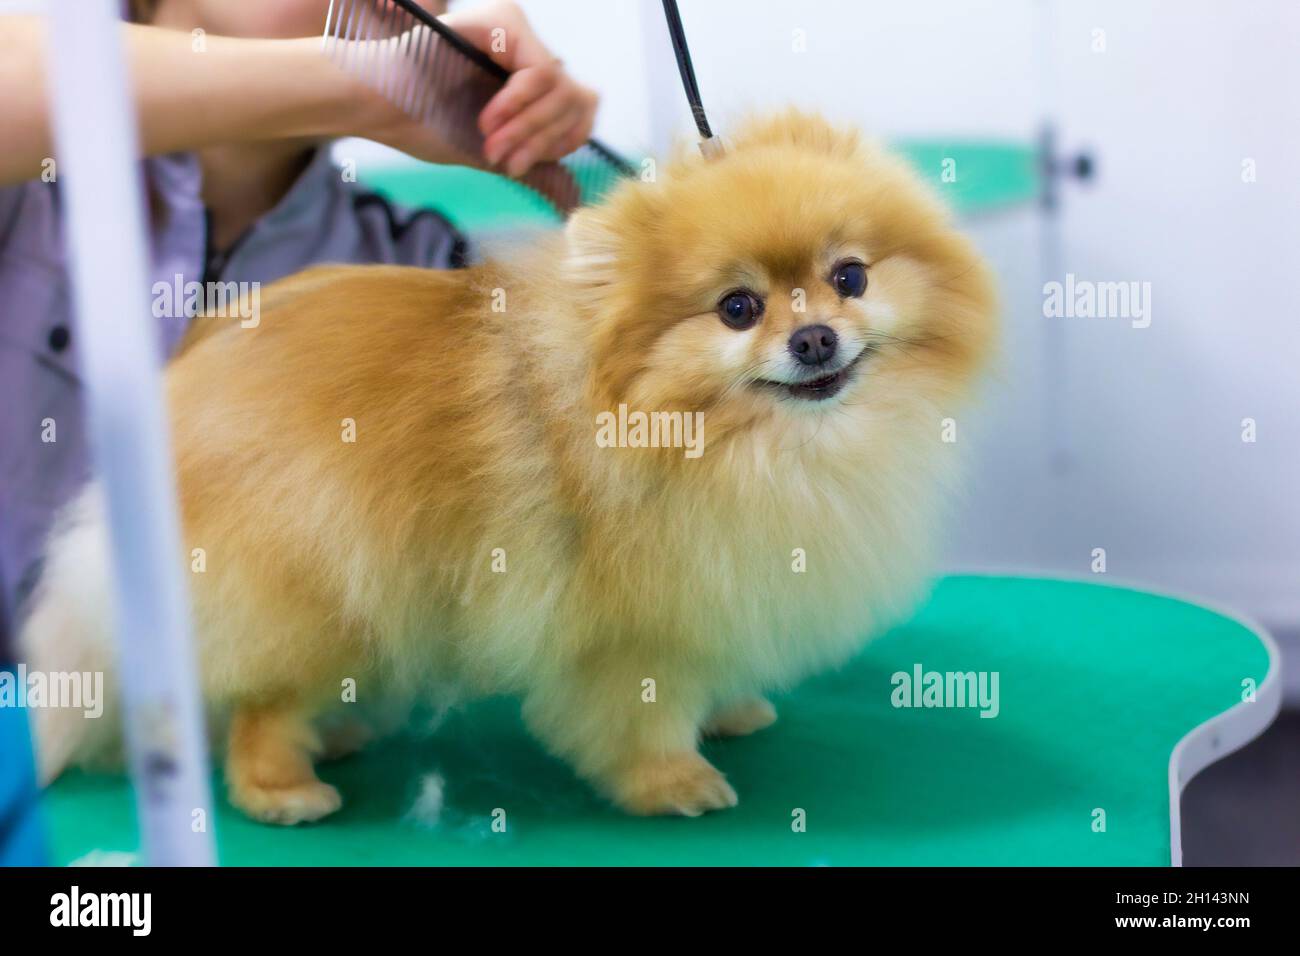 Una giovane donna pettina e asciuga la pelliccia del cane, si occupa di un cucciolo nel salone, il lavoro, la professione e la cura degli animali. Foto Stock